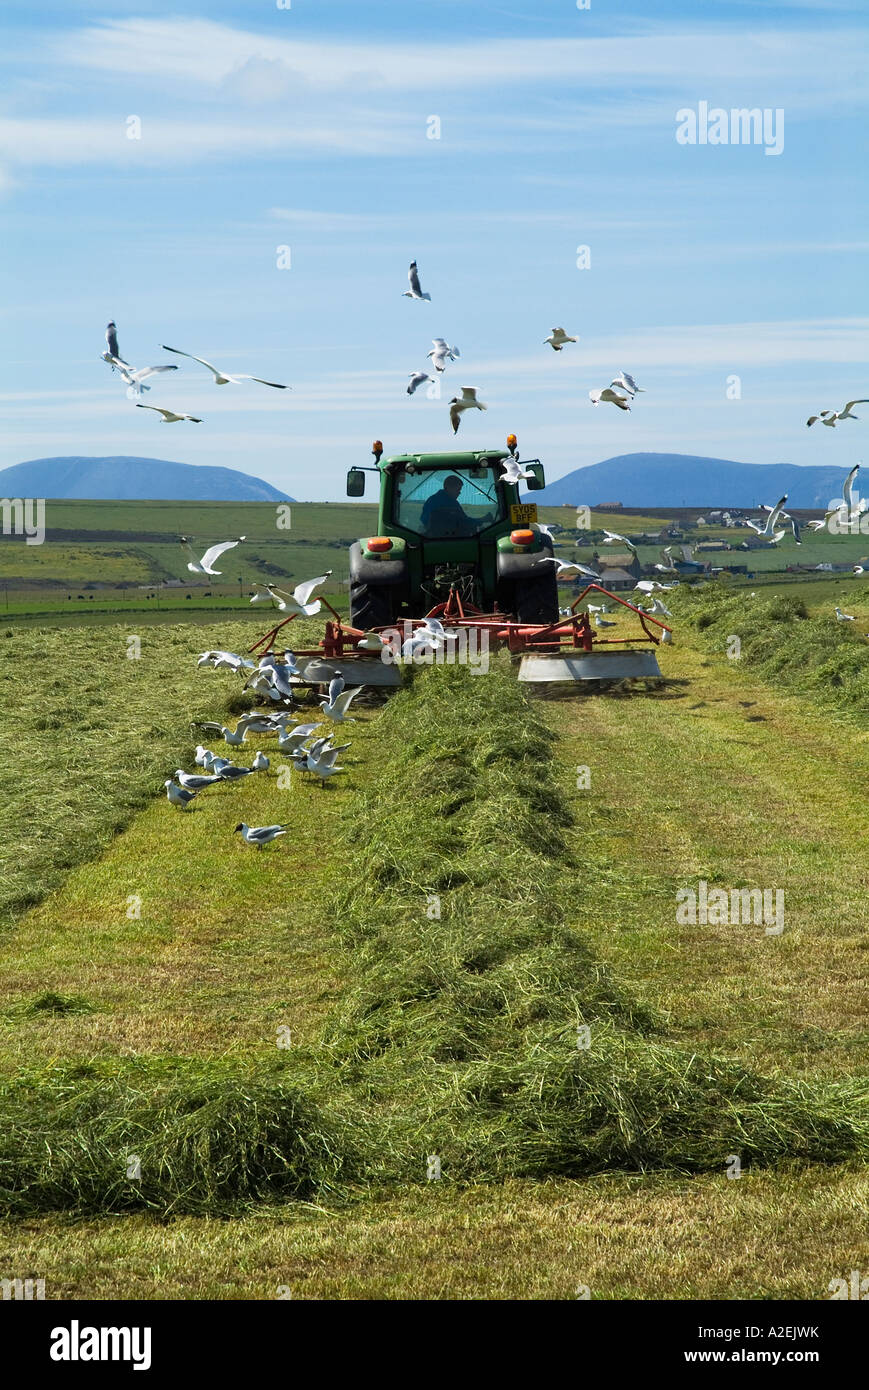 dh récolte de tracteur Royaume-Uni récolte de foin de graminées terres agricoles Stenness Orkney Segulls troupeau d'oiseaux récolte de tracteurs de terrain oiseaux dans la ferme écossaise Banque D'Images